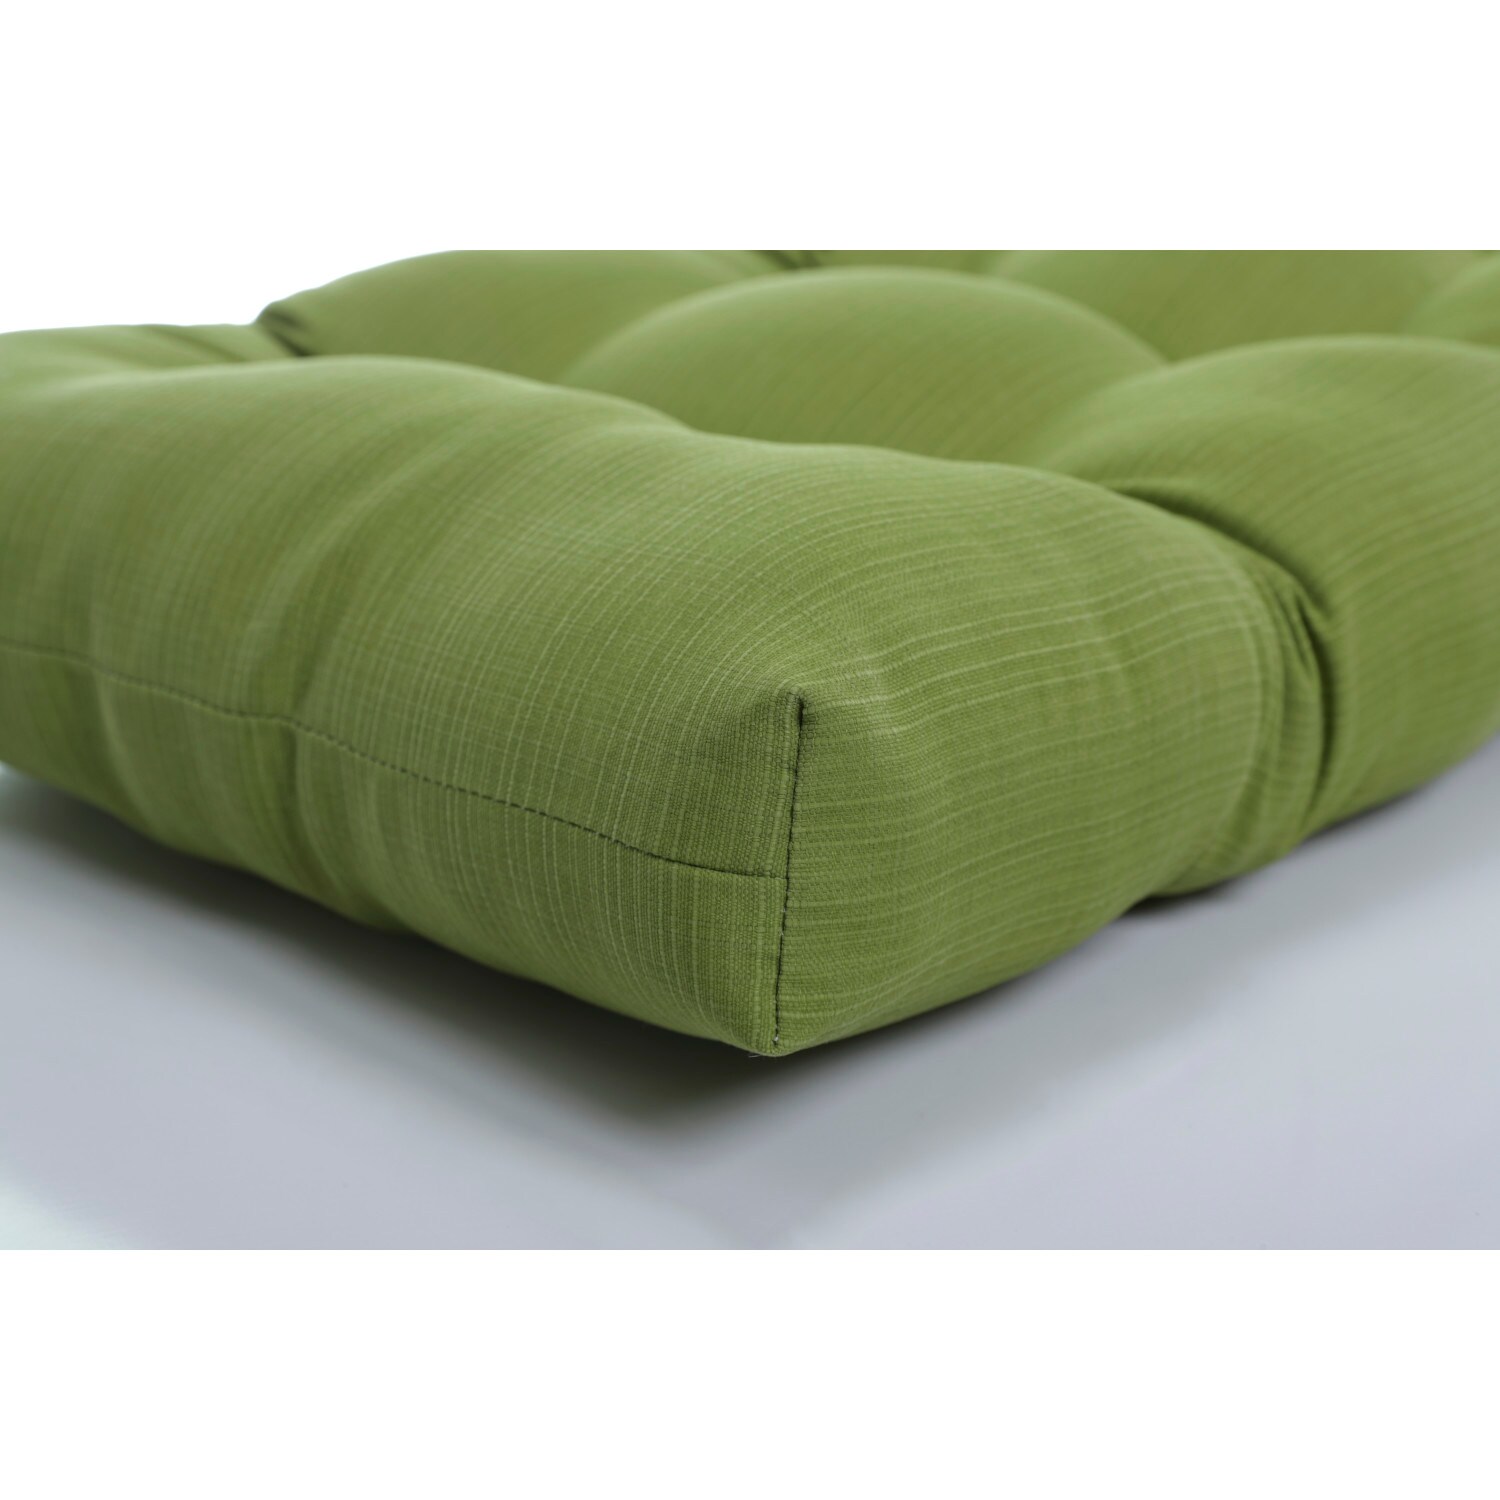 Noir Pillow Perfect Outdoor Clemens Wicker Loveseat Cushion 